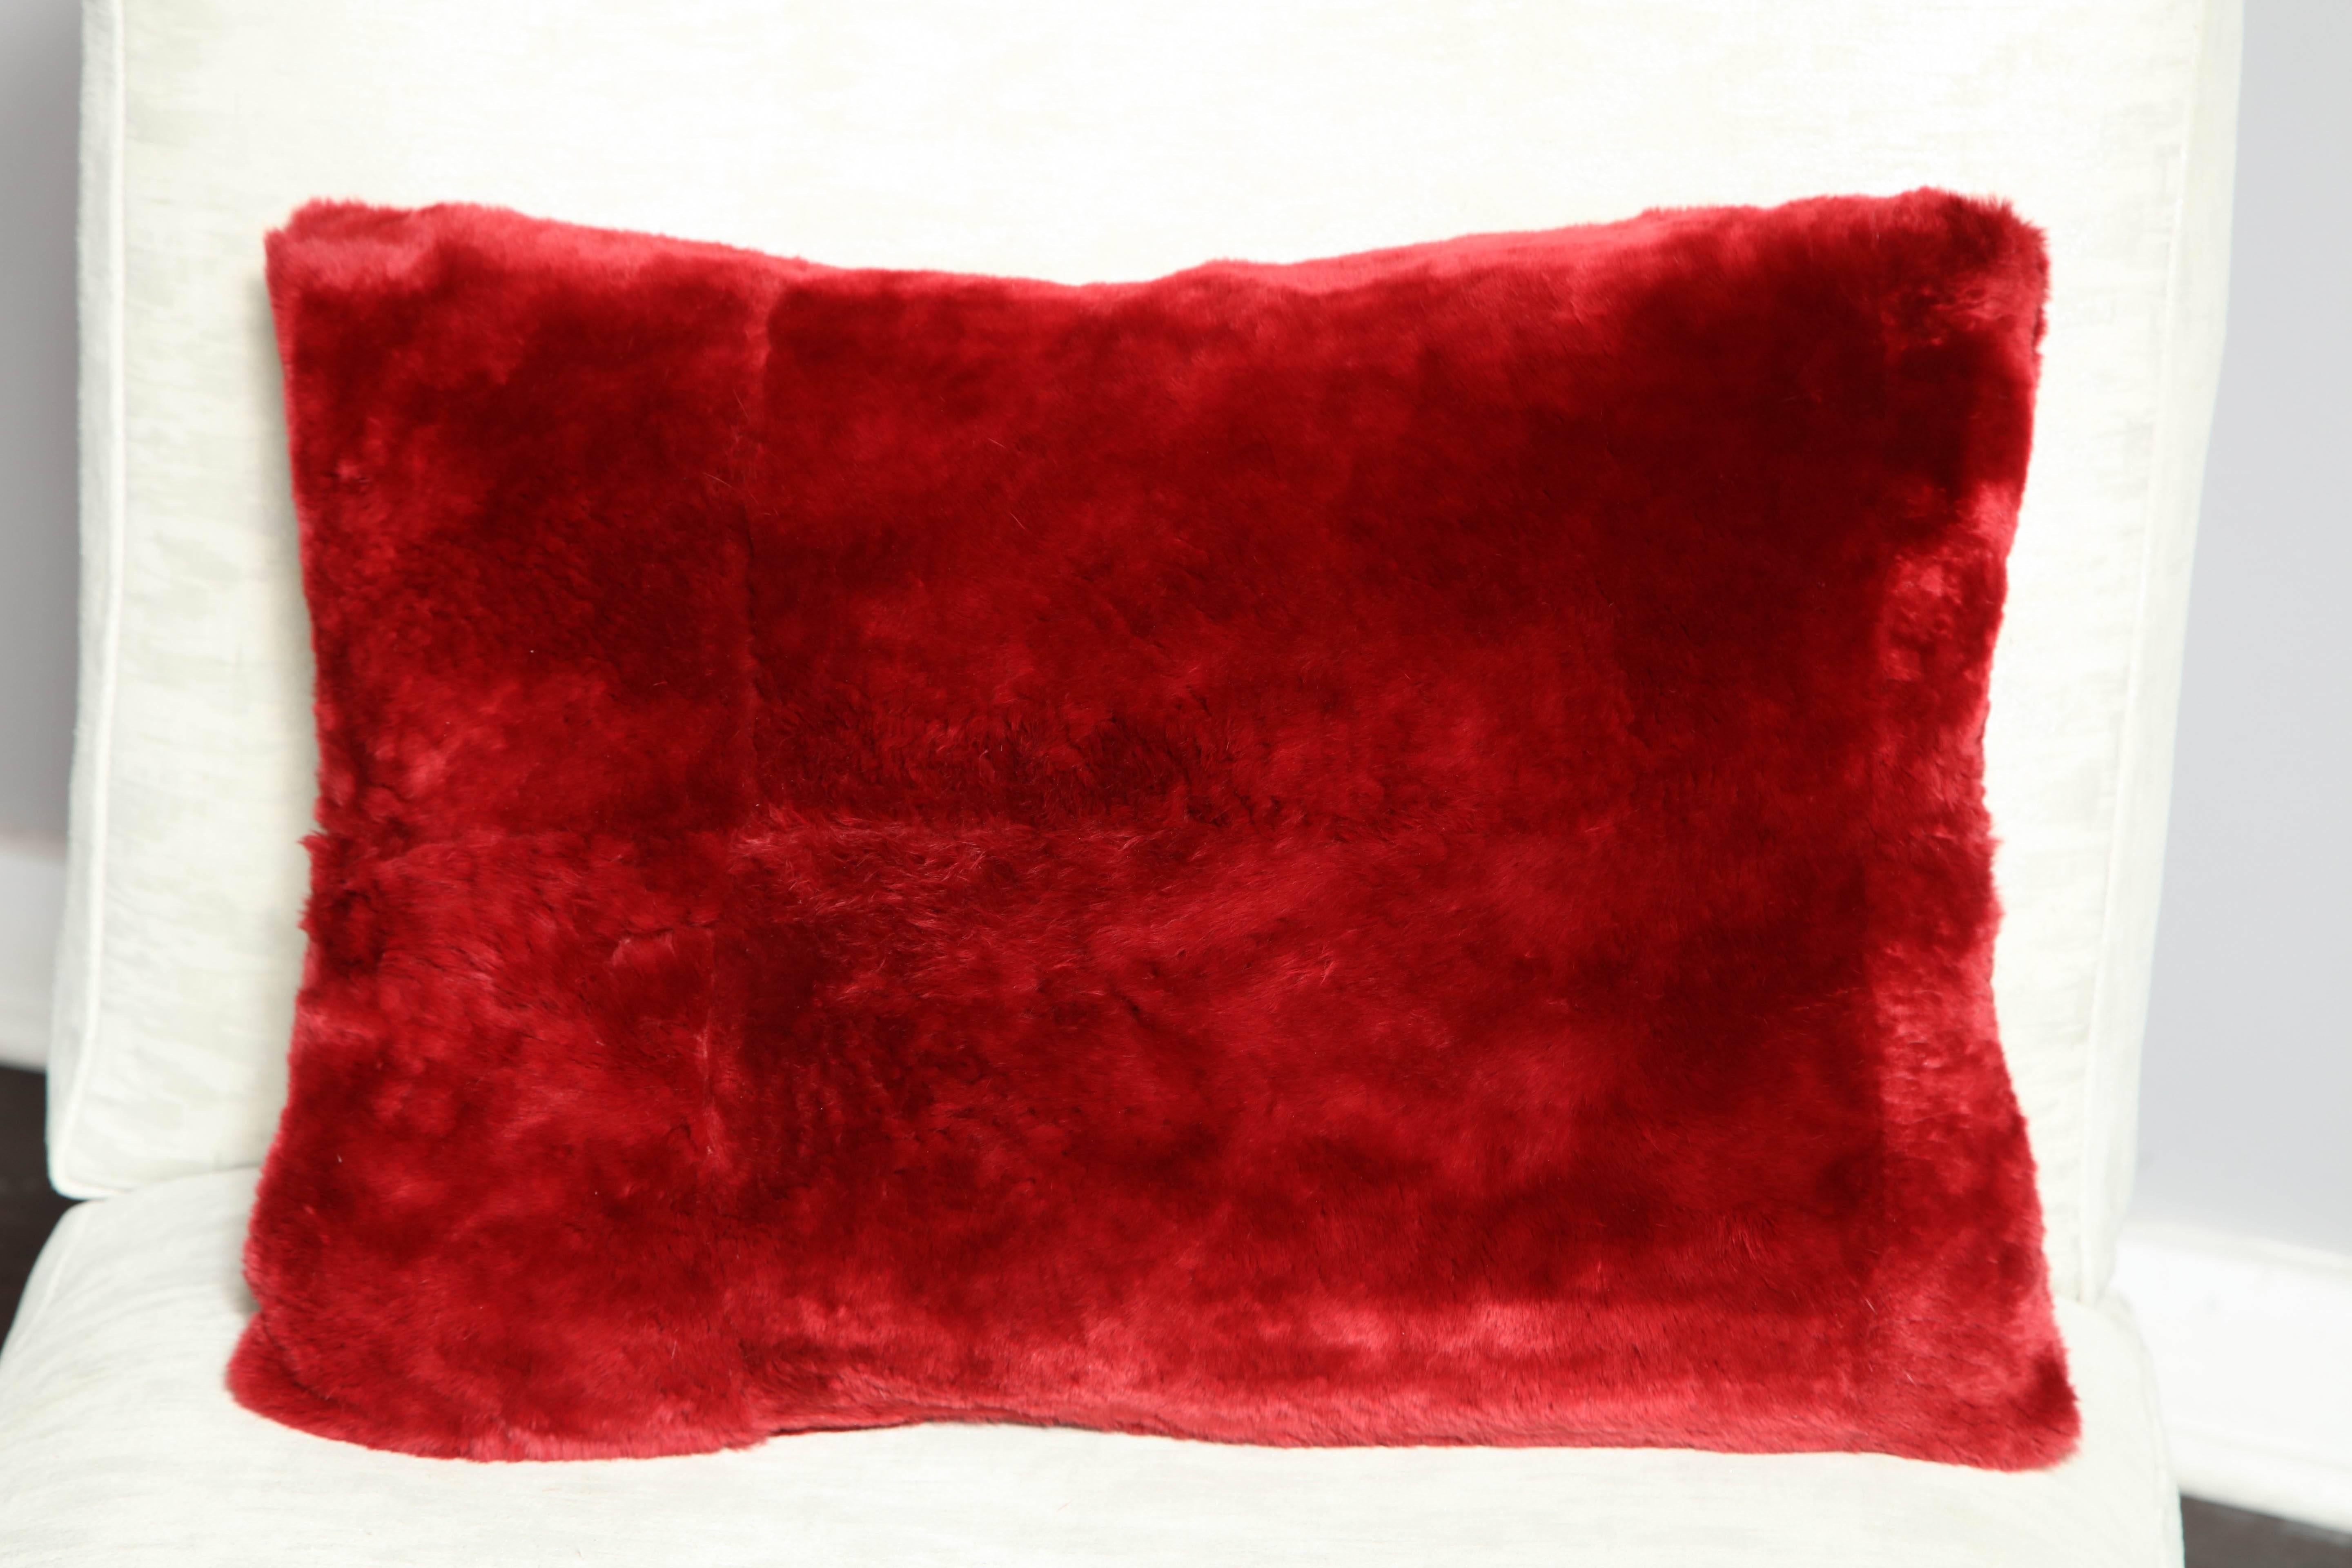 Coussin personnalisé en forme de castor rouge tondu. Des commandes personnalisées sont disponibles pour des tailles et des couleurs différentes.